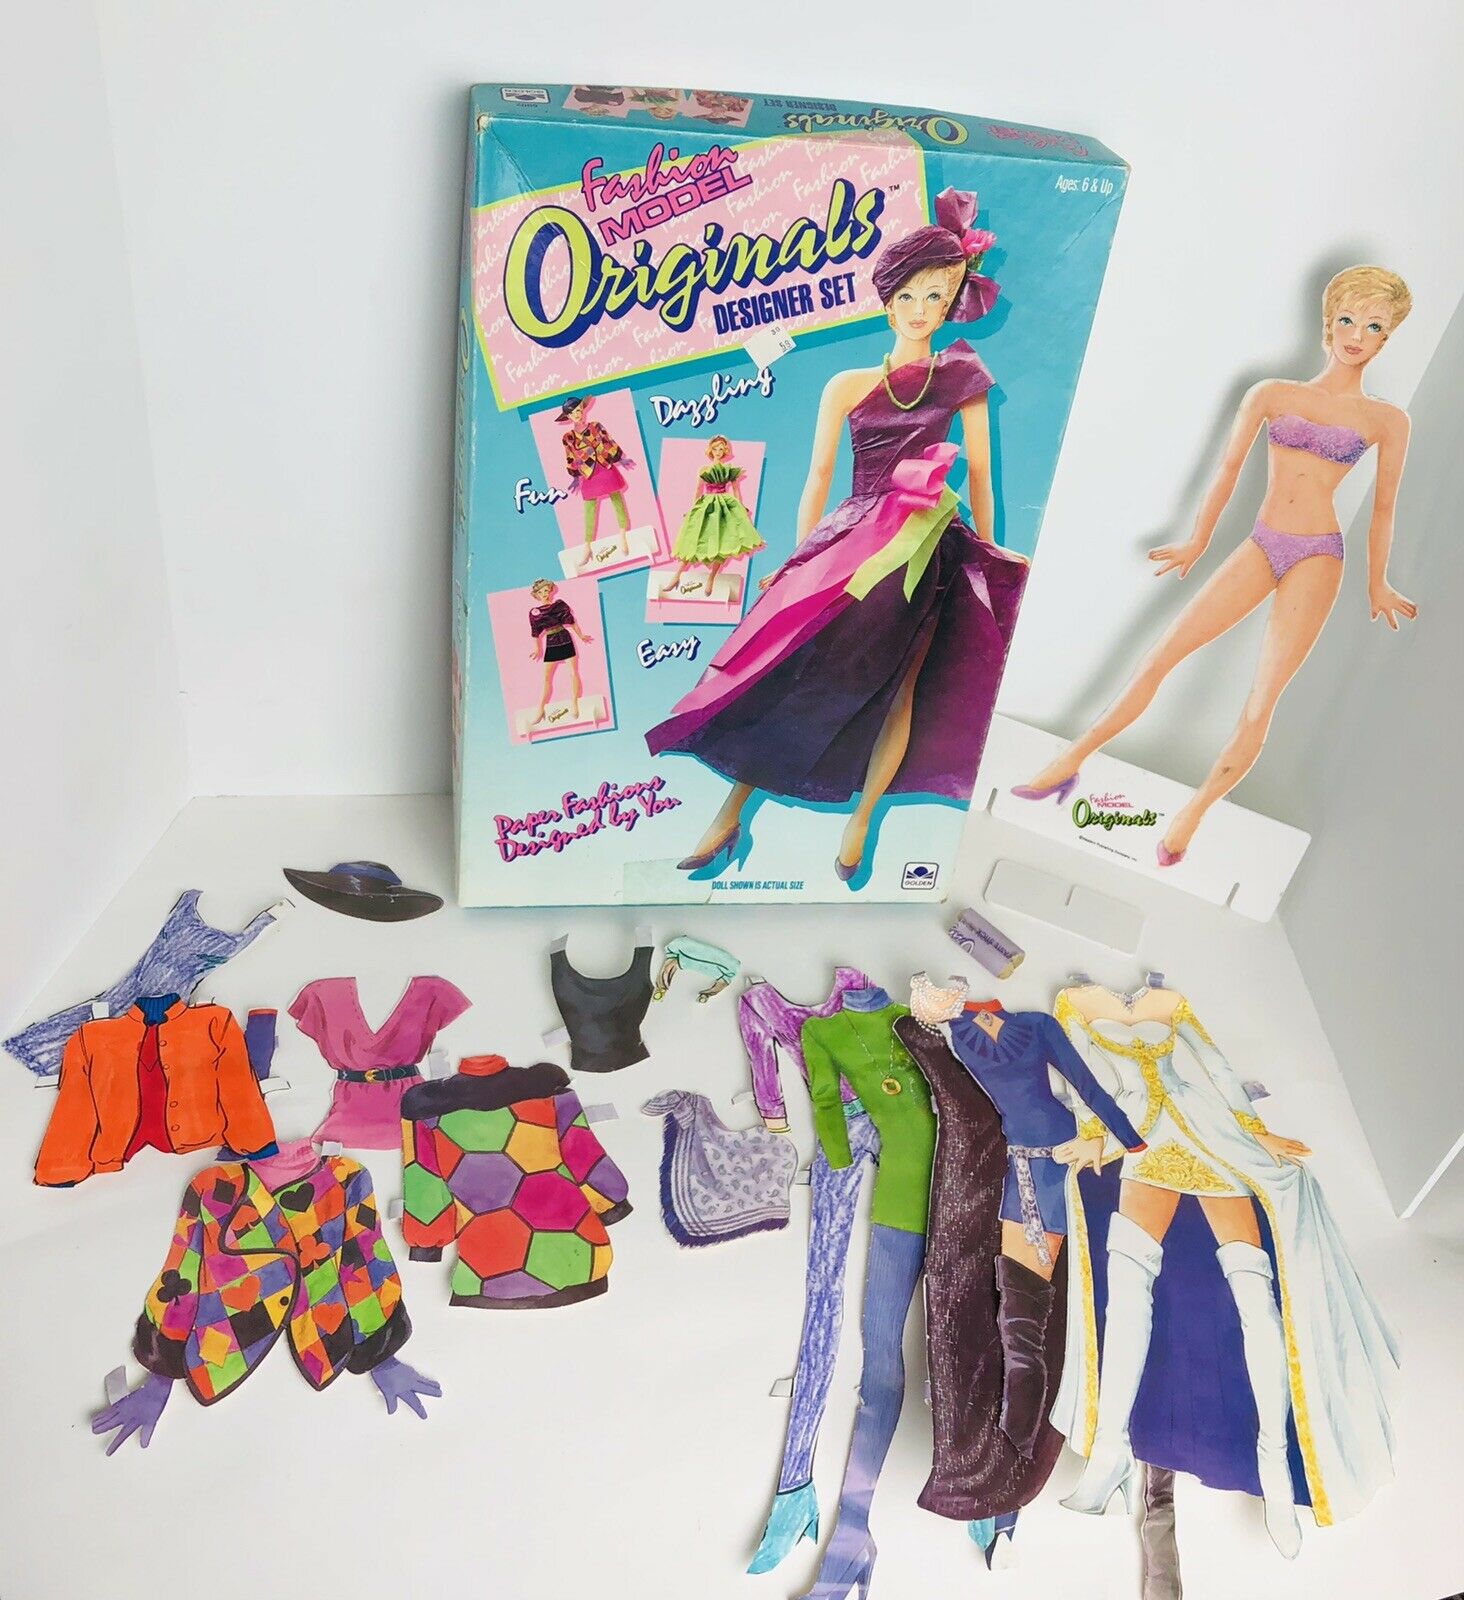 Vintage 1991 Golden Fashion Model Originals Designer Set Doll Kit Paper Doll